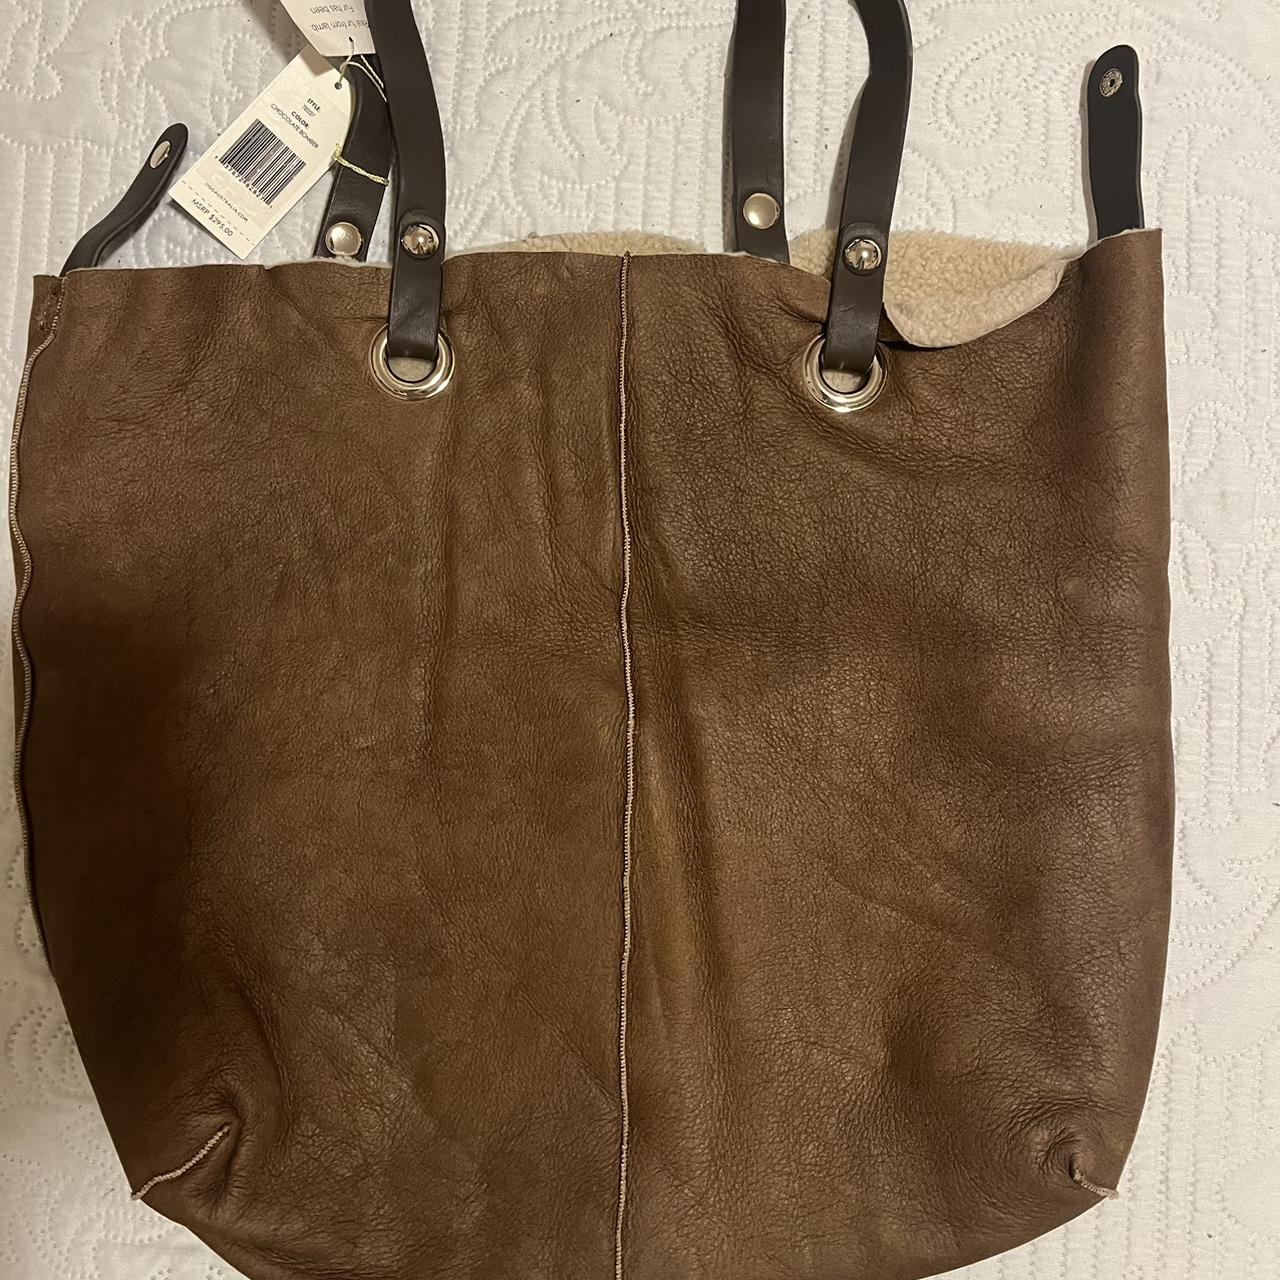 NWOT Stone & Company Shoulder bag Caramel brown - Depop